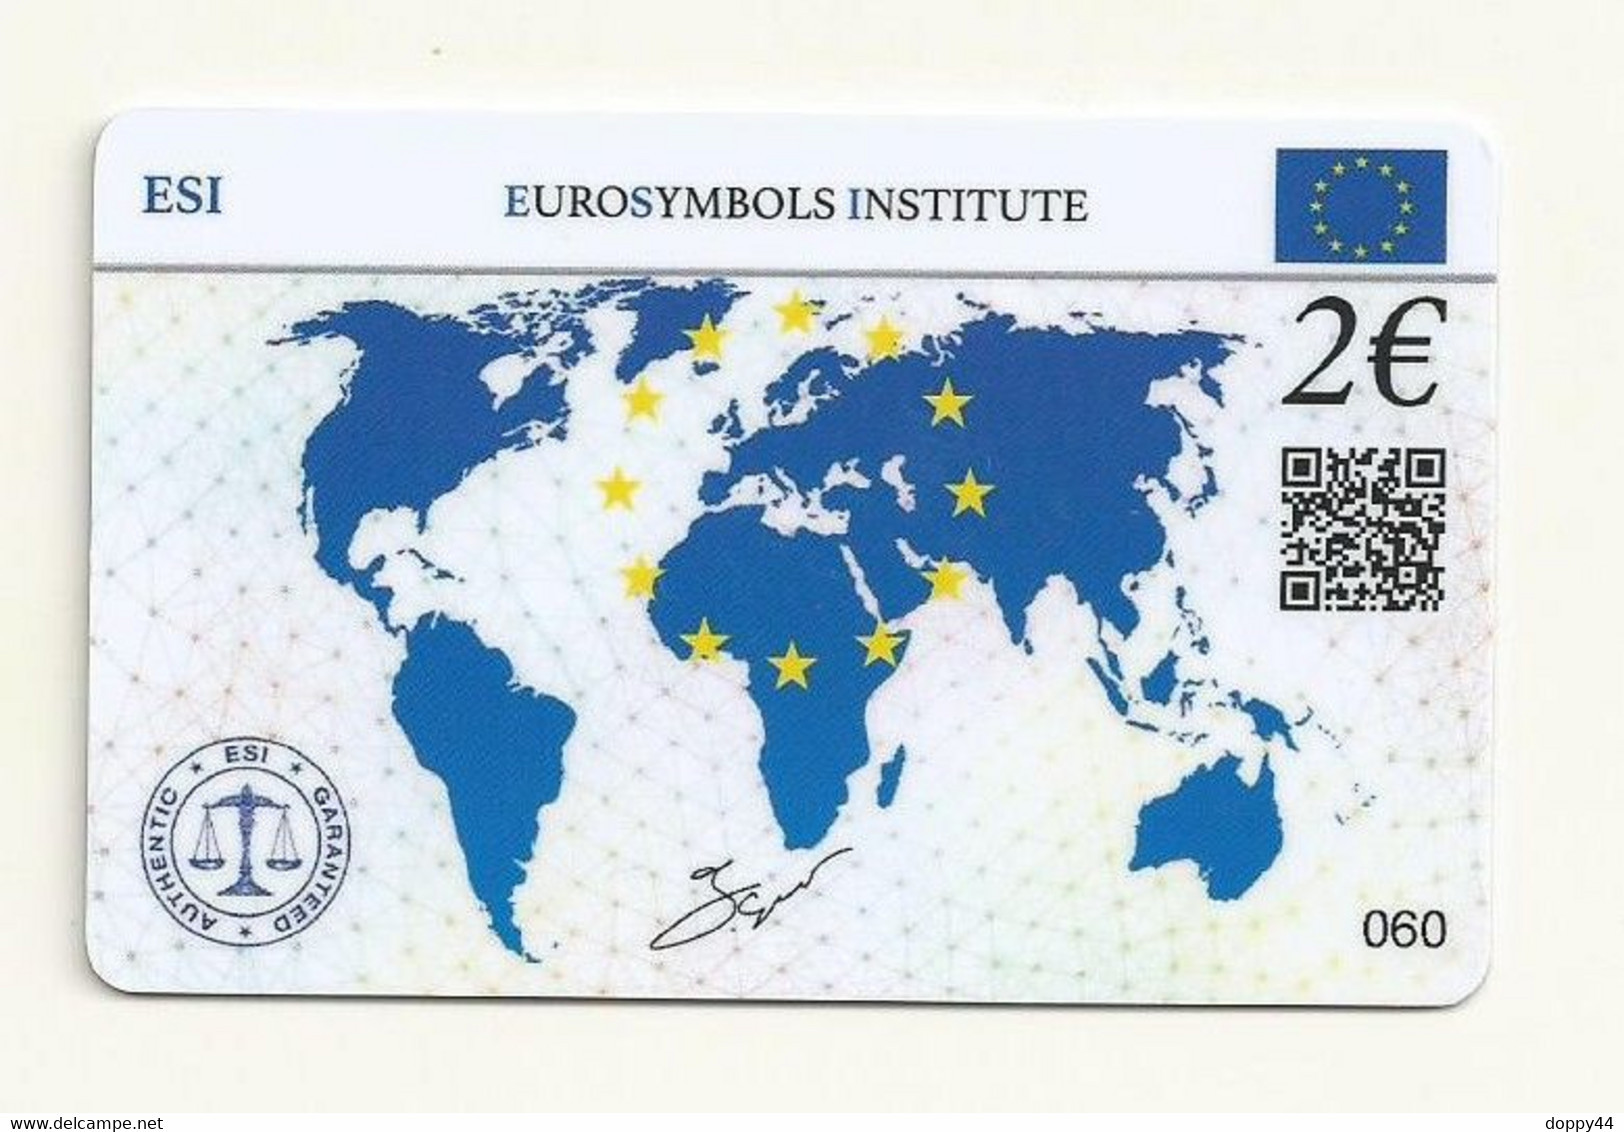 CARTE DE COLLECTION SANS PIECE SLOVAQUIE EUROSYMBOLS INSTITUTE ESI ID CARD 2021. - Slovakia